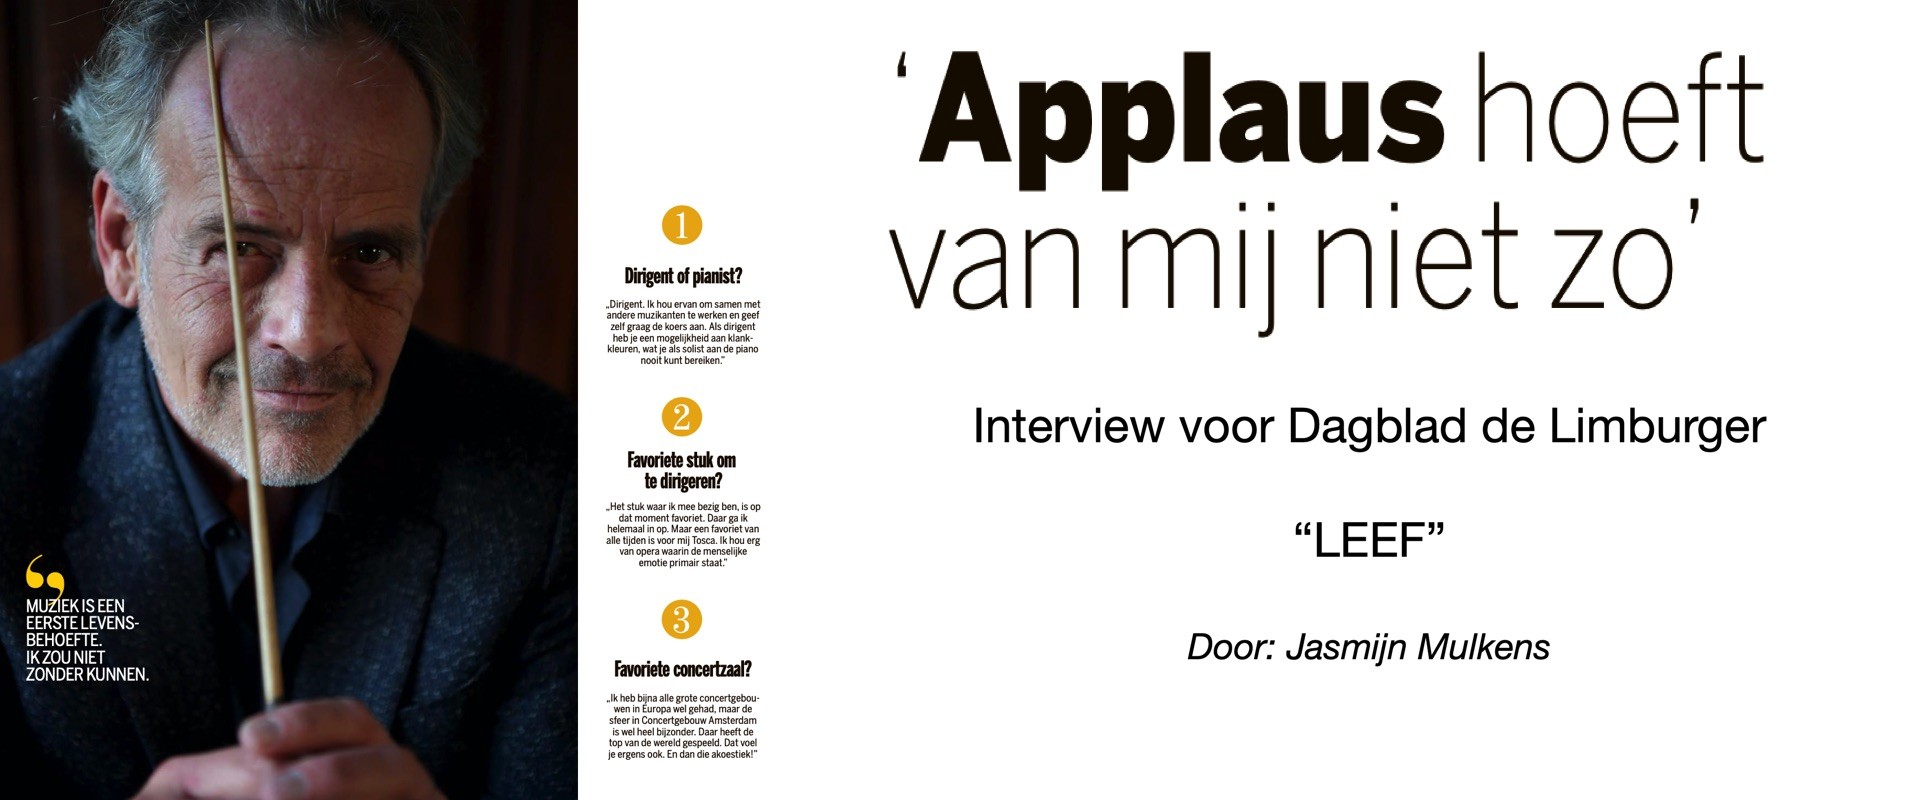 Raymond Janssen interview Dagblad de Limburger 